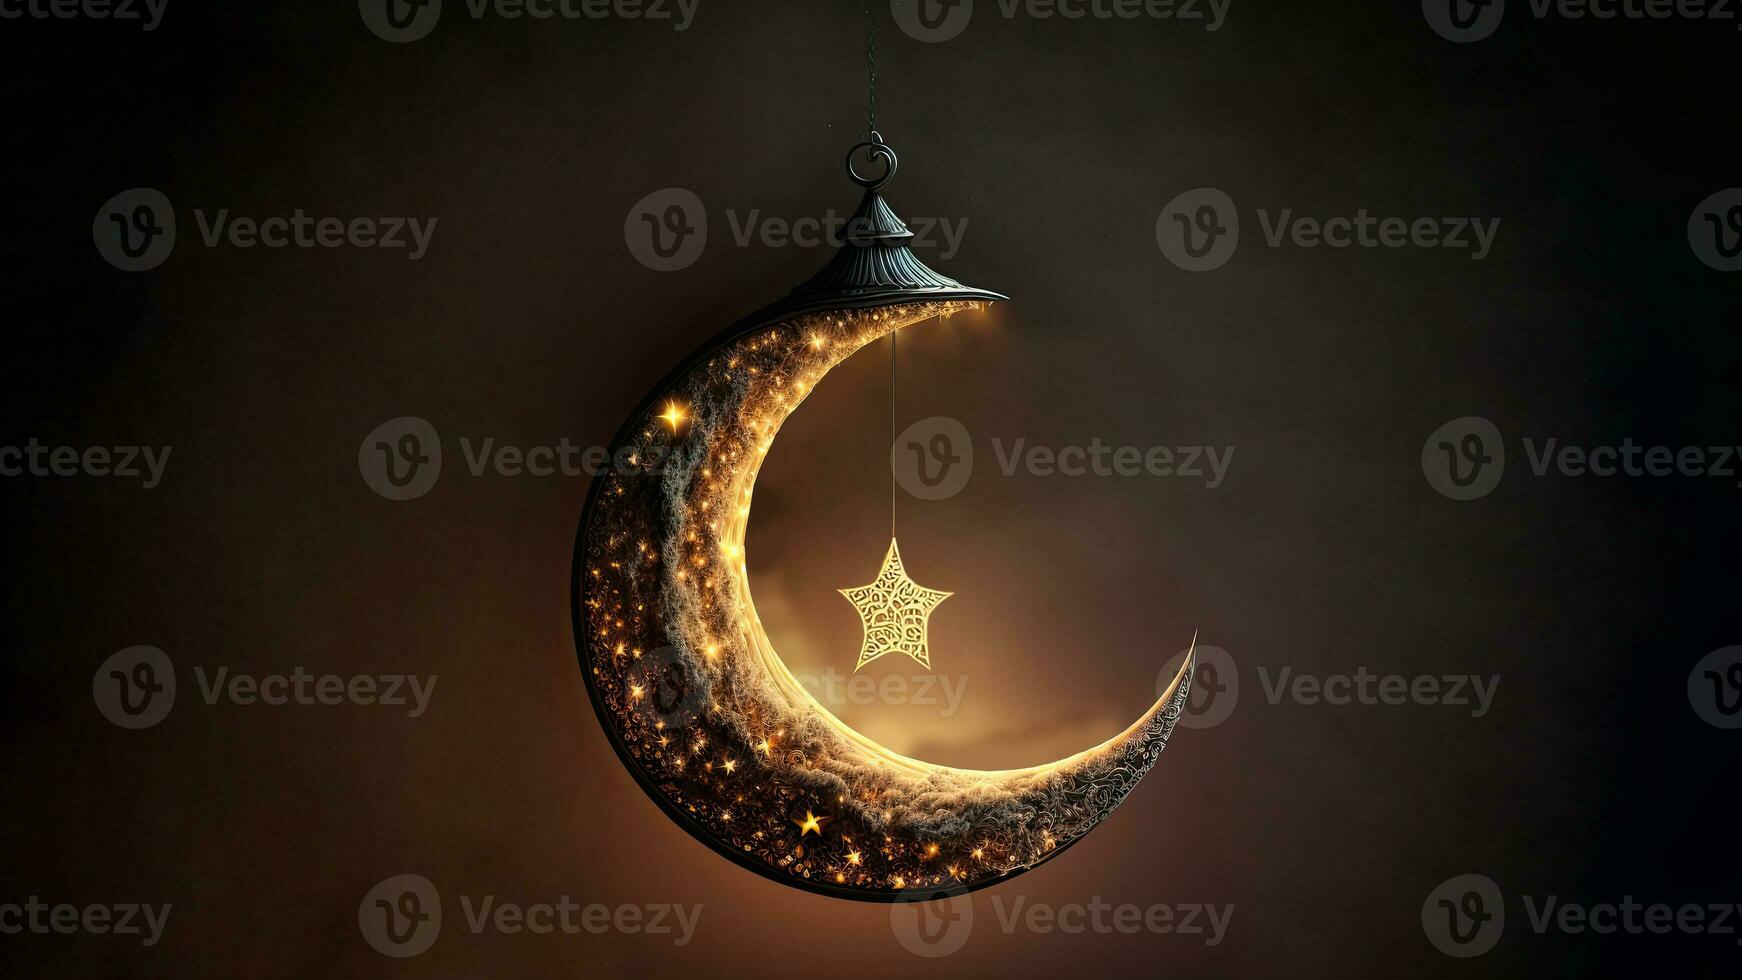 3d machen von hängend exquisit geschnitzt Mond mit Star auf dunkel Hintergrund. islamisch religiös Konzept. foto